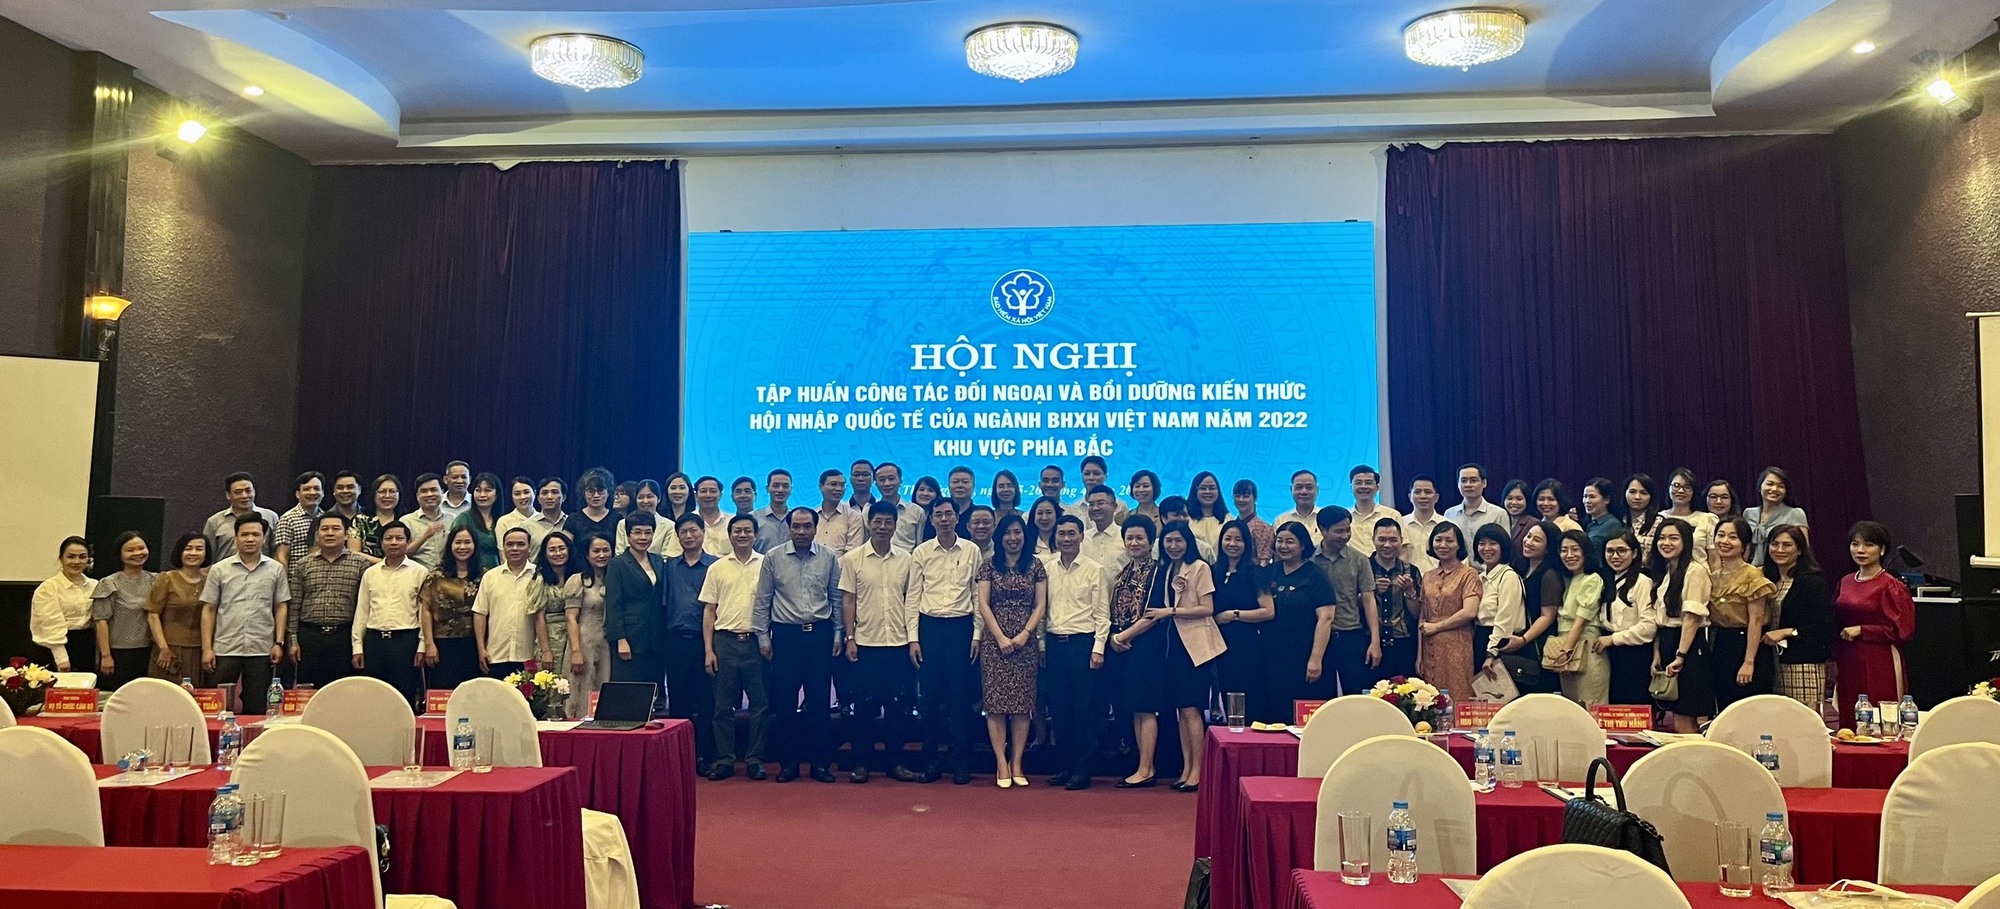 BHXH Việt Nam bồi dưỡng kiến thức hội nhập quốc tế cho công chức, viên chức phụ trách công tác đối ngoại - Ảnh 1.